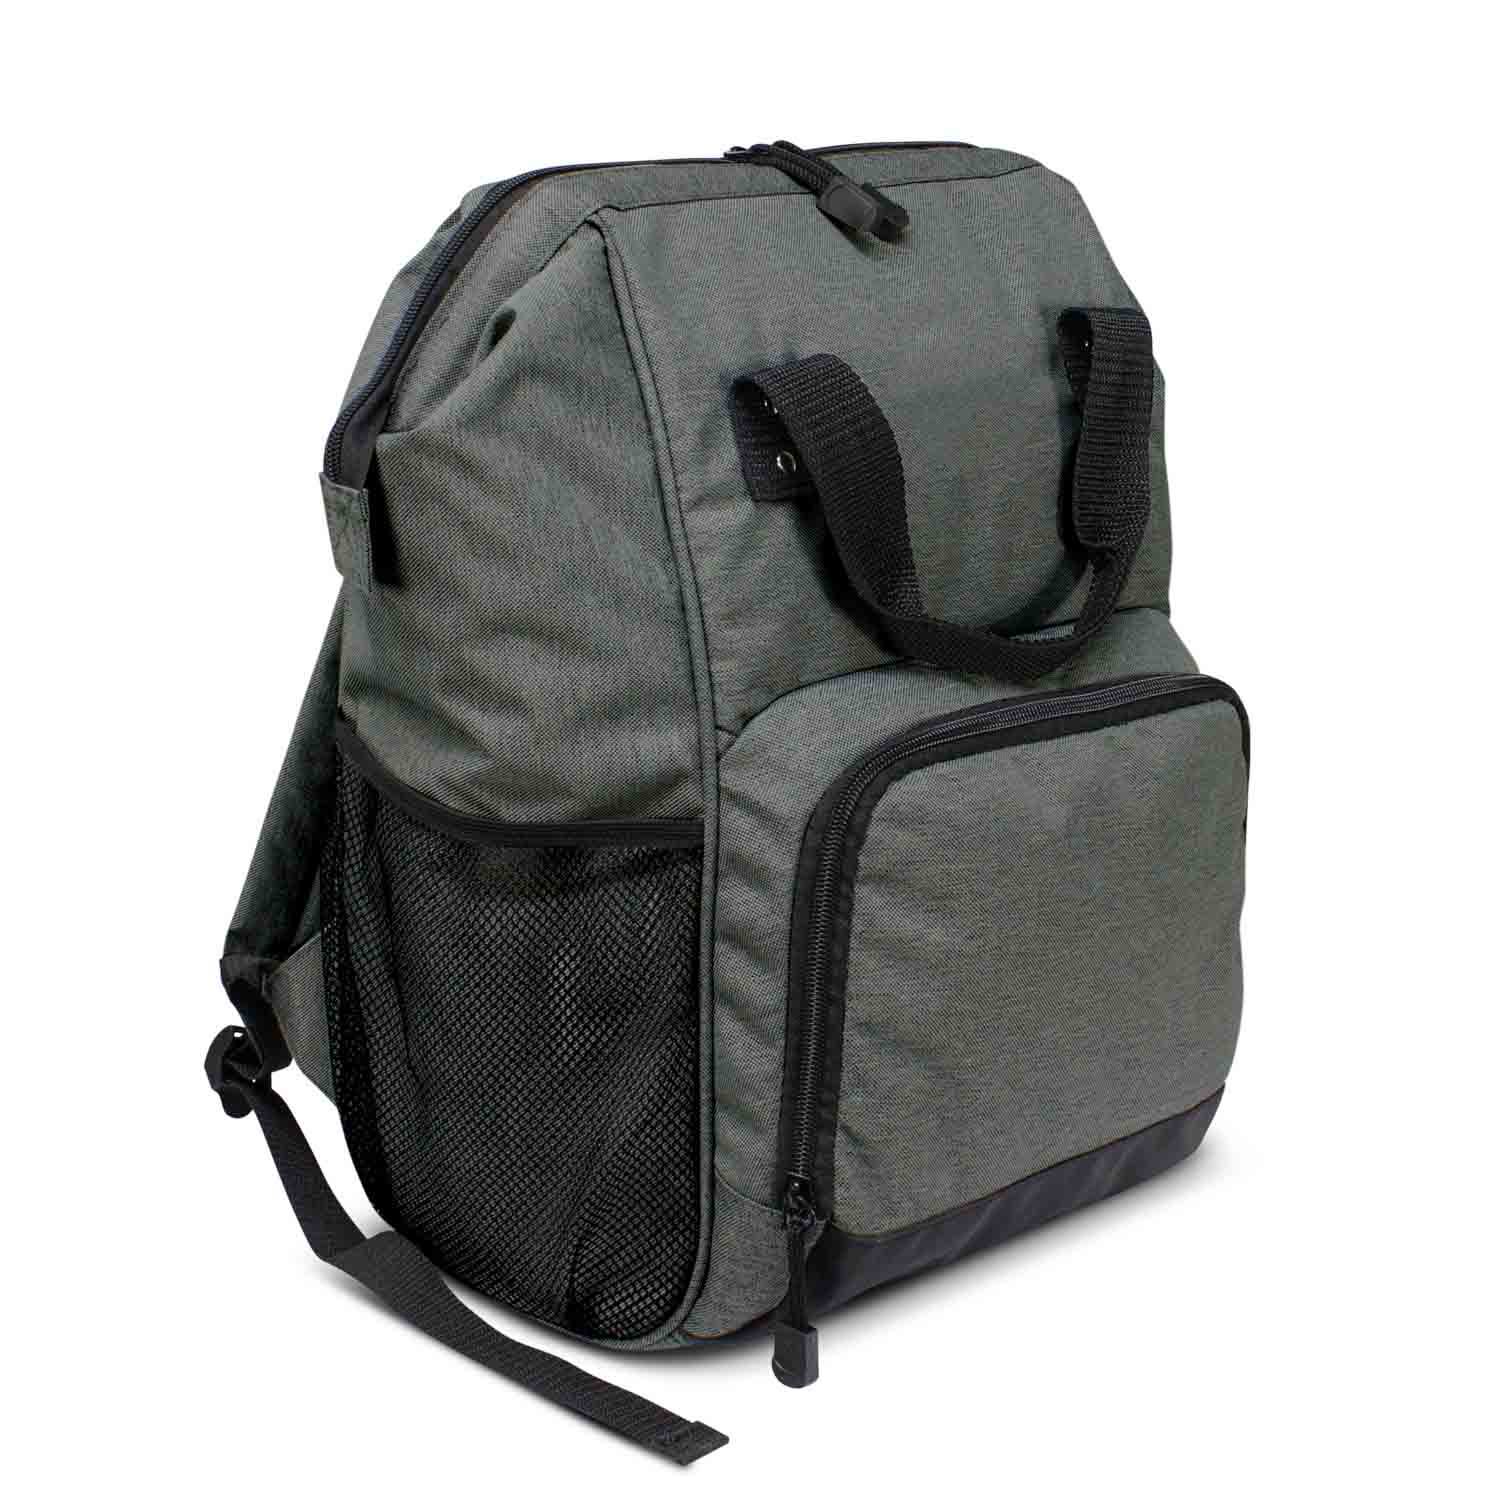  Buy Custom Coronet Cooler Backpack online Australia